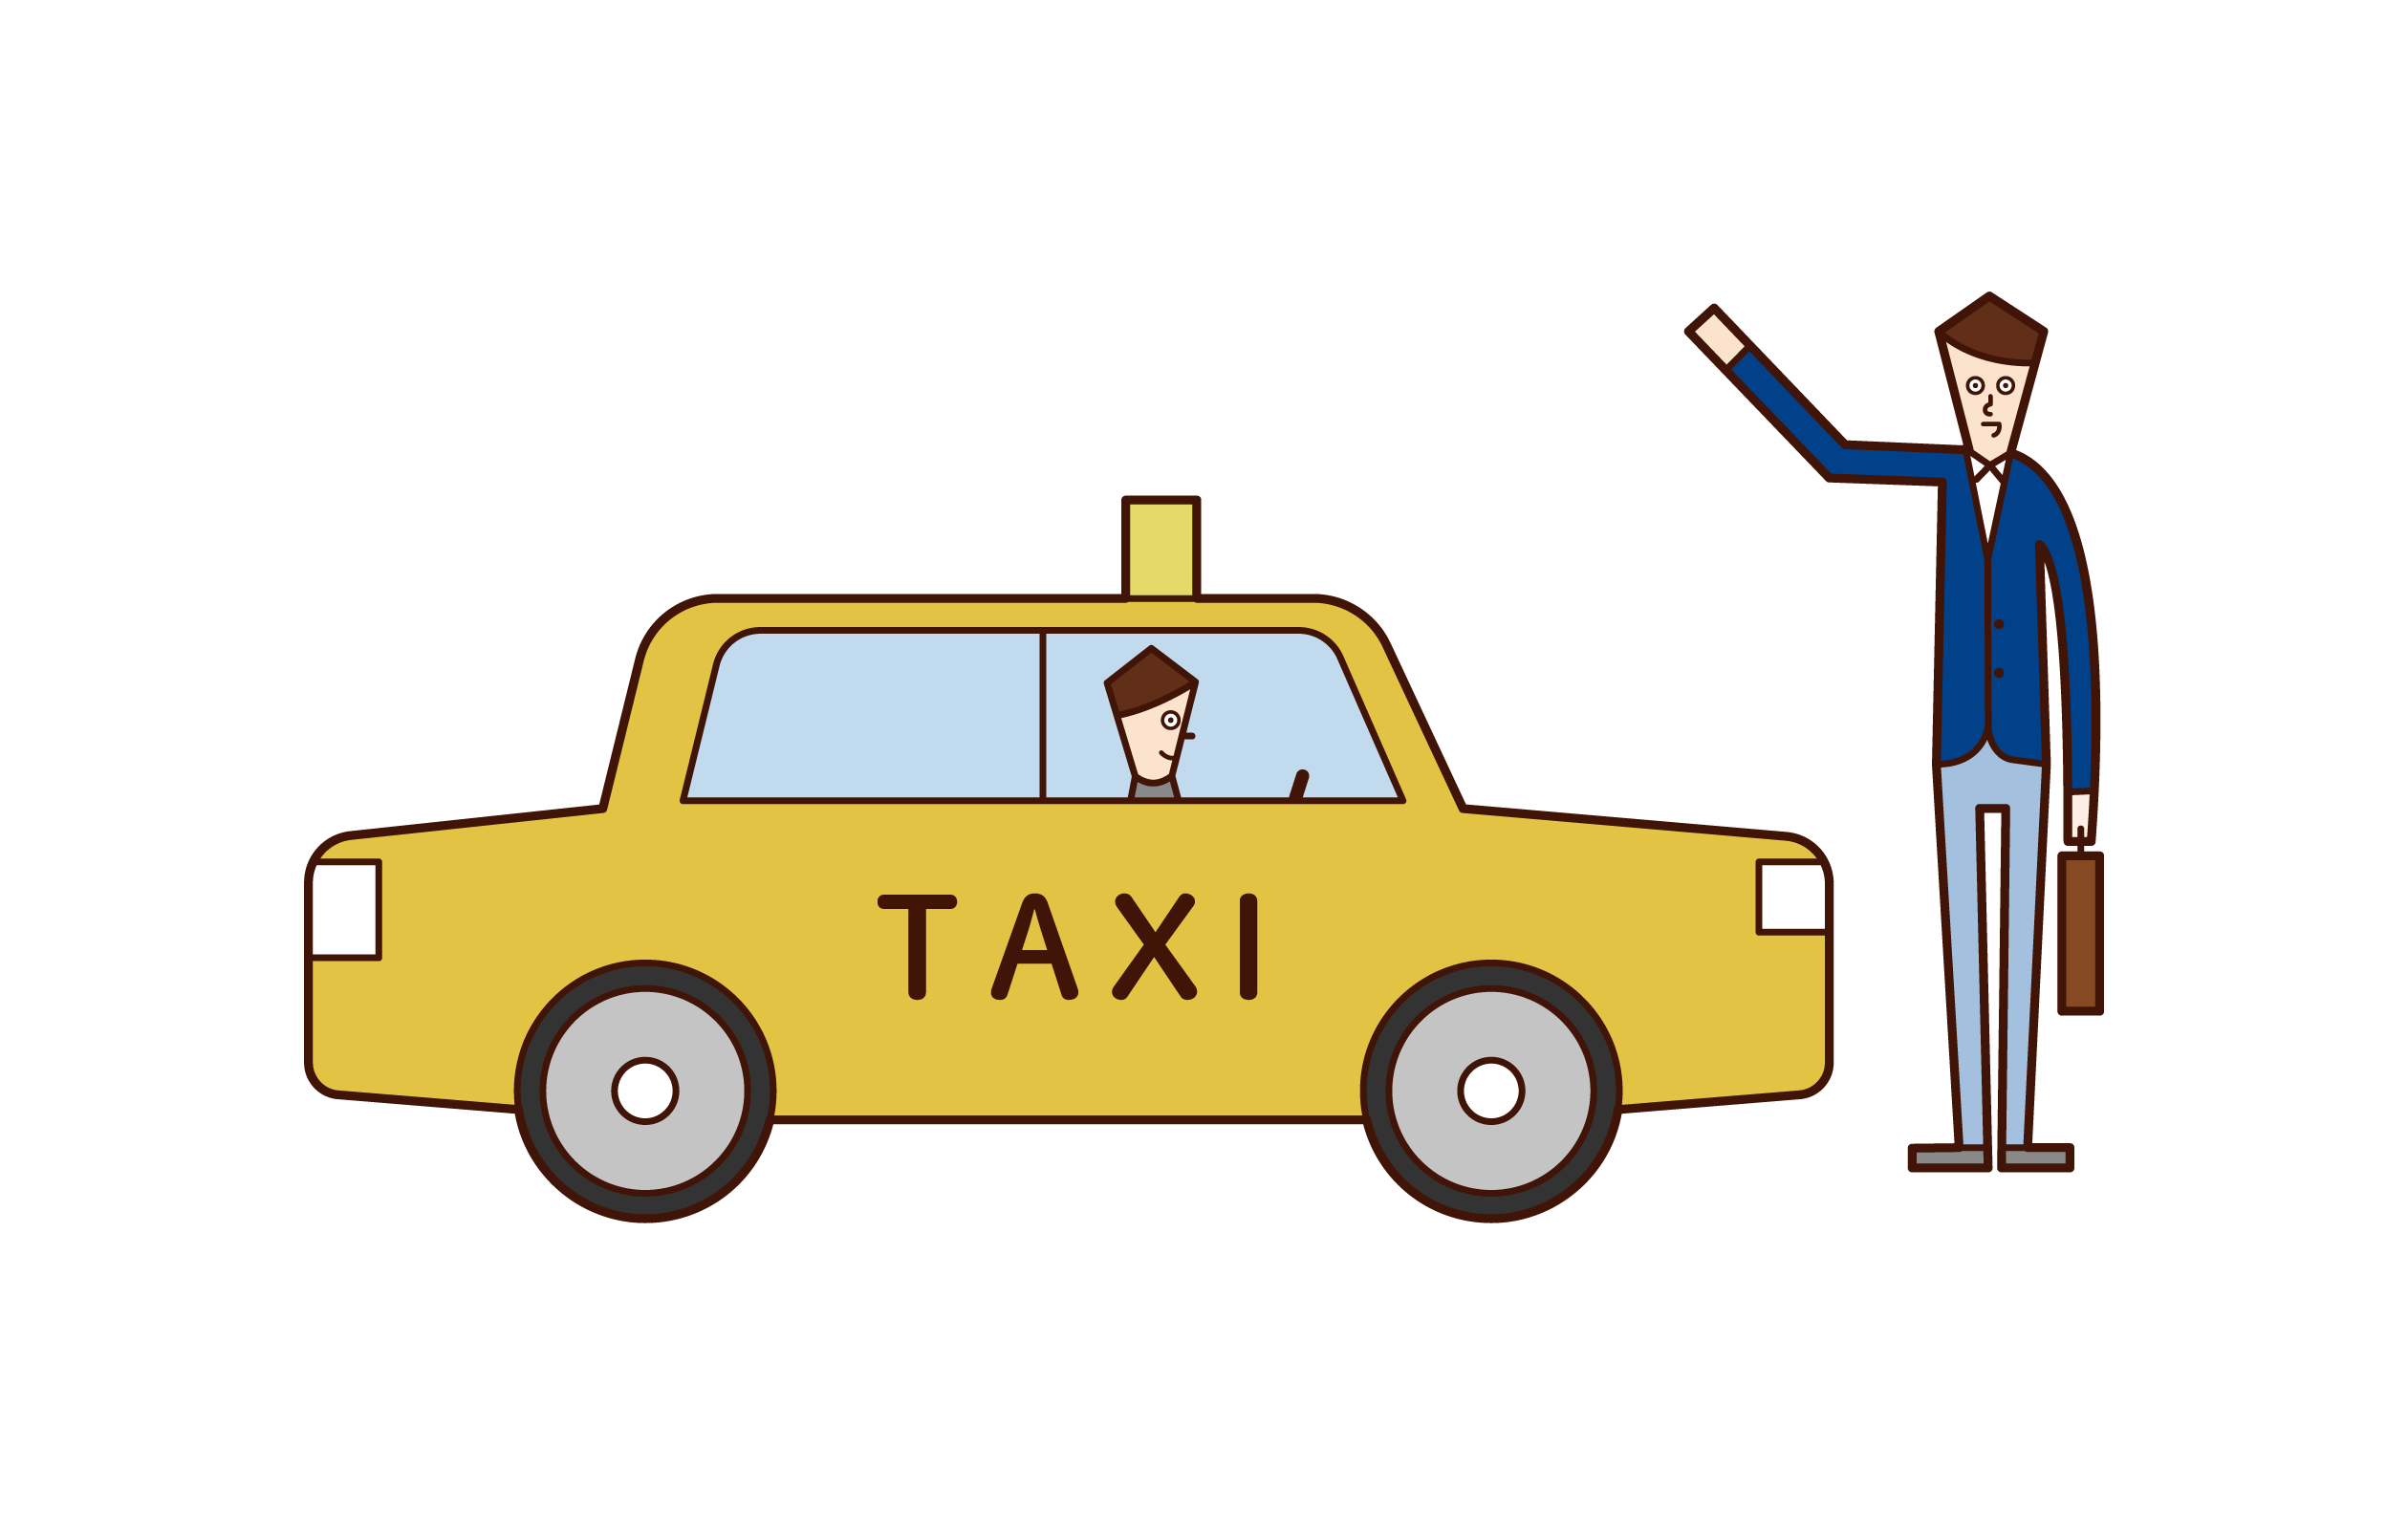 タクシーを捕まえる人 女性 のイラスト フリーイラスト素材 Kukukeke ククケケ